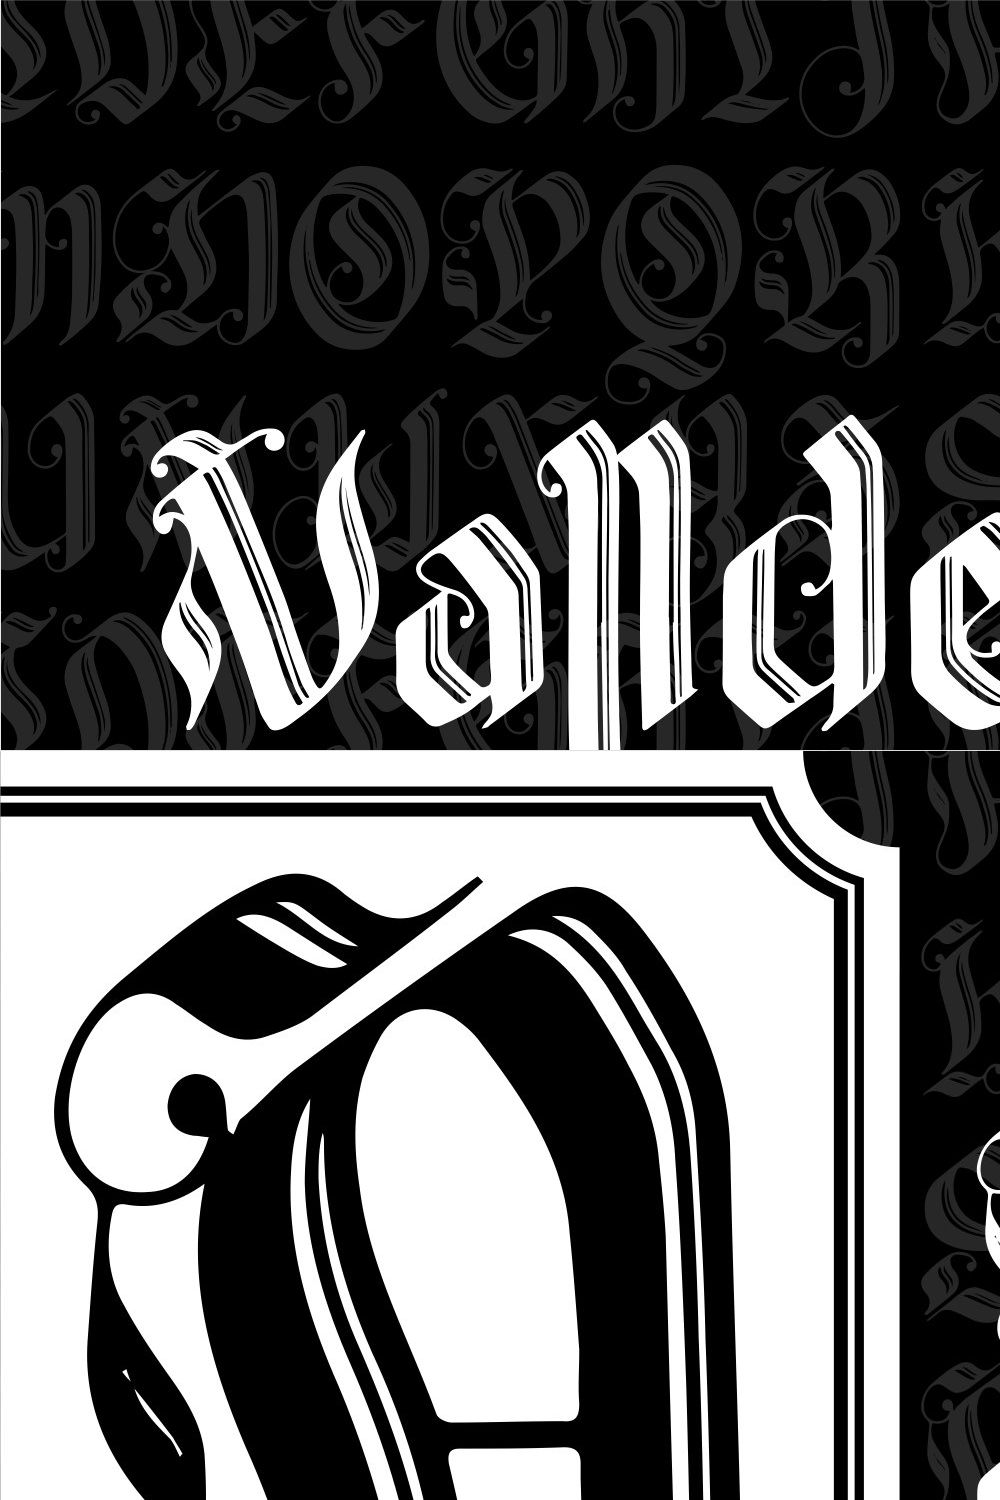 Valldemar - Blackletter pinterest preview image.